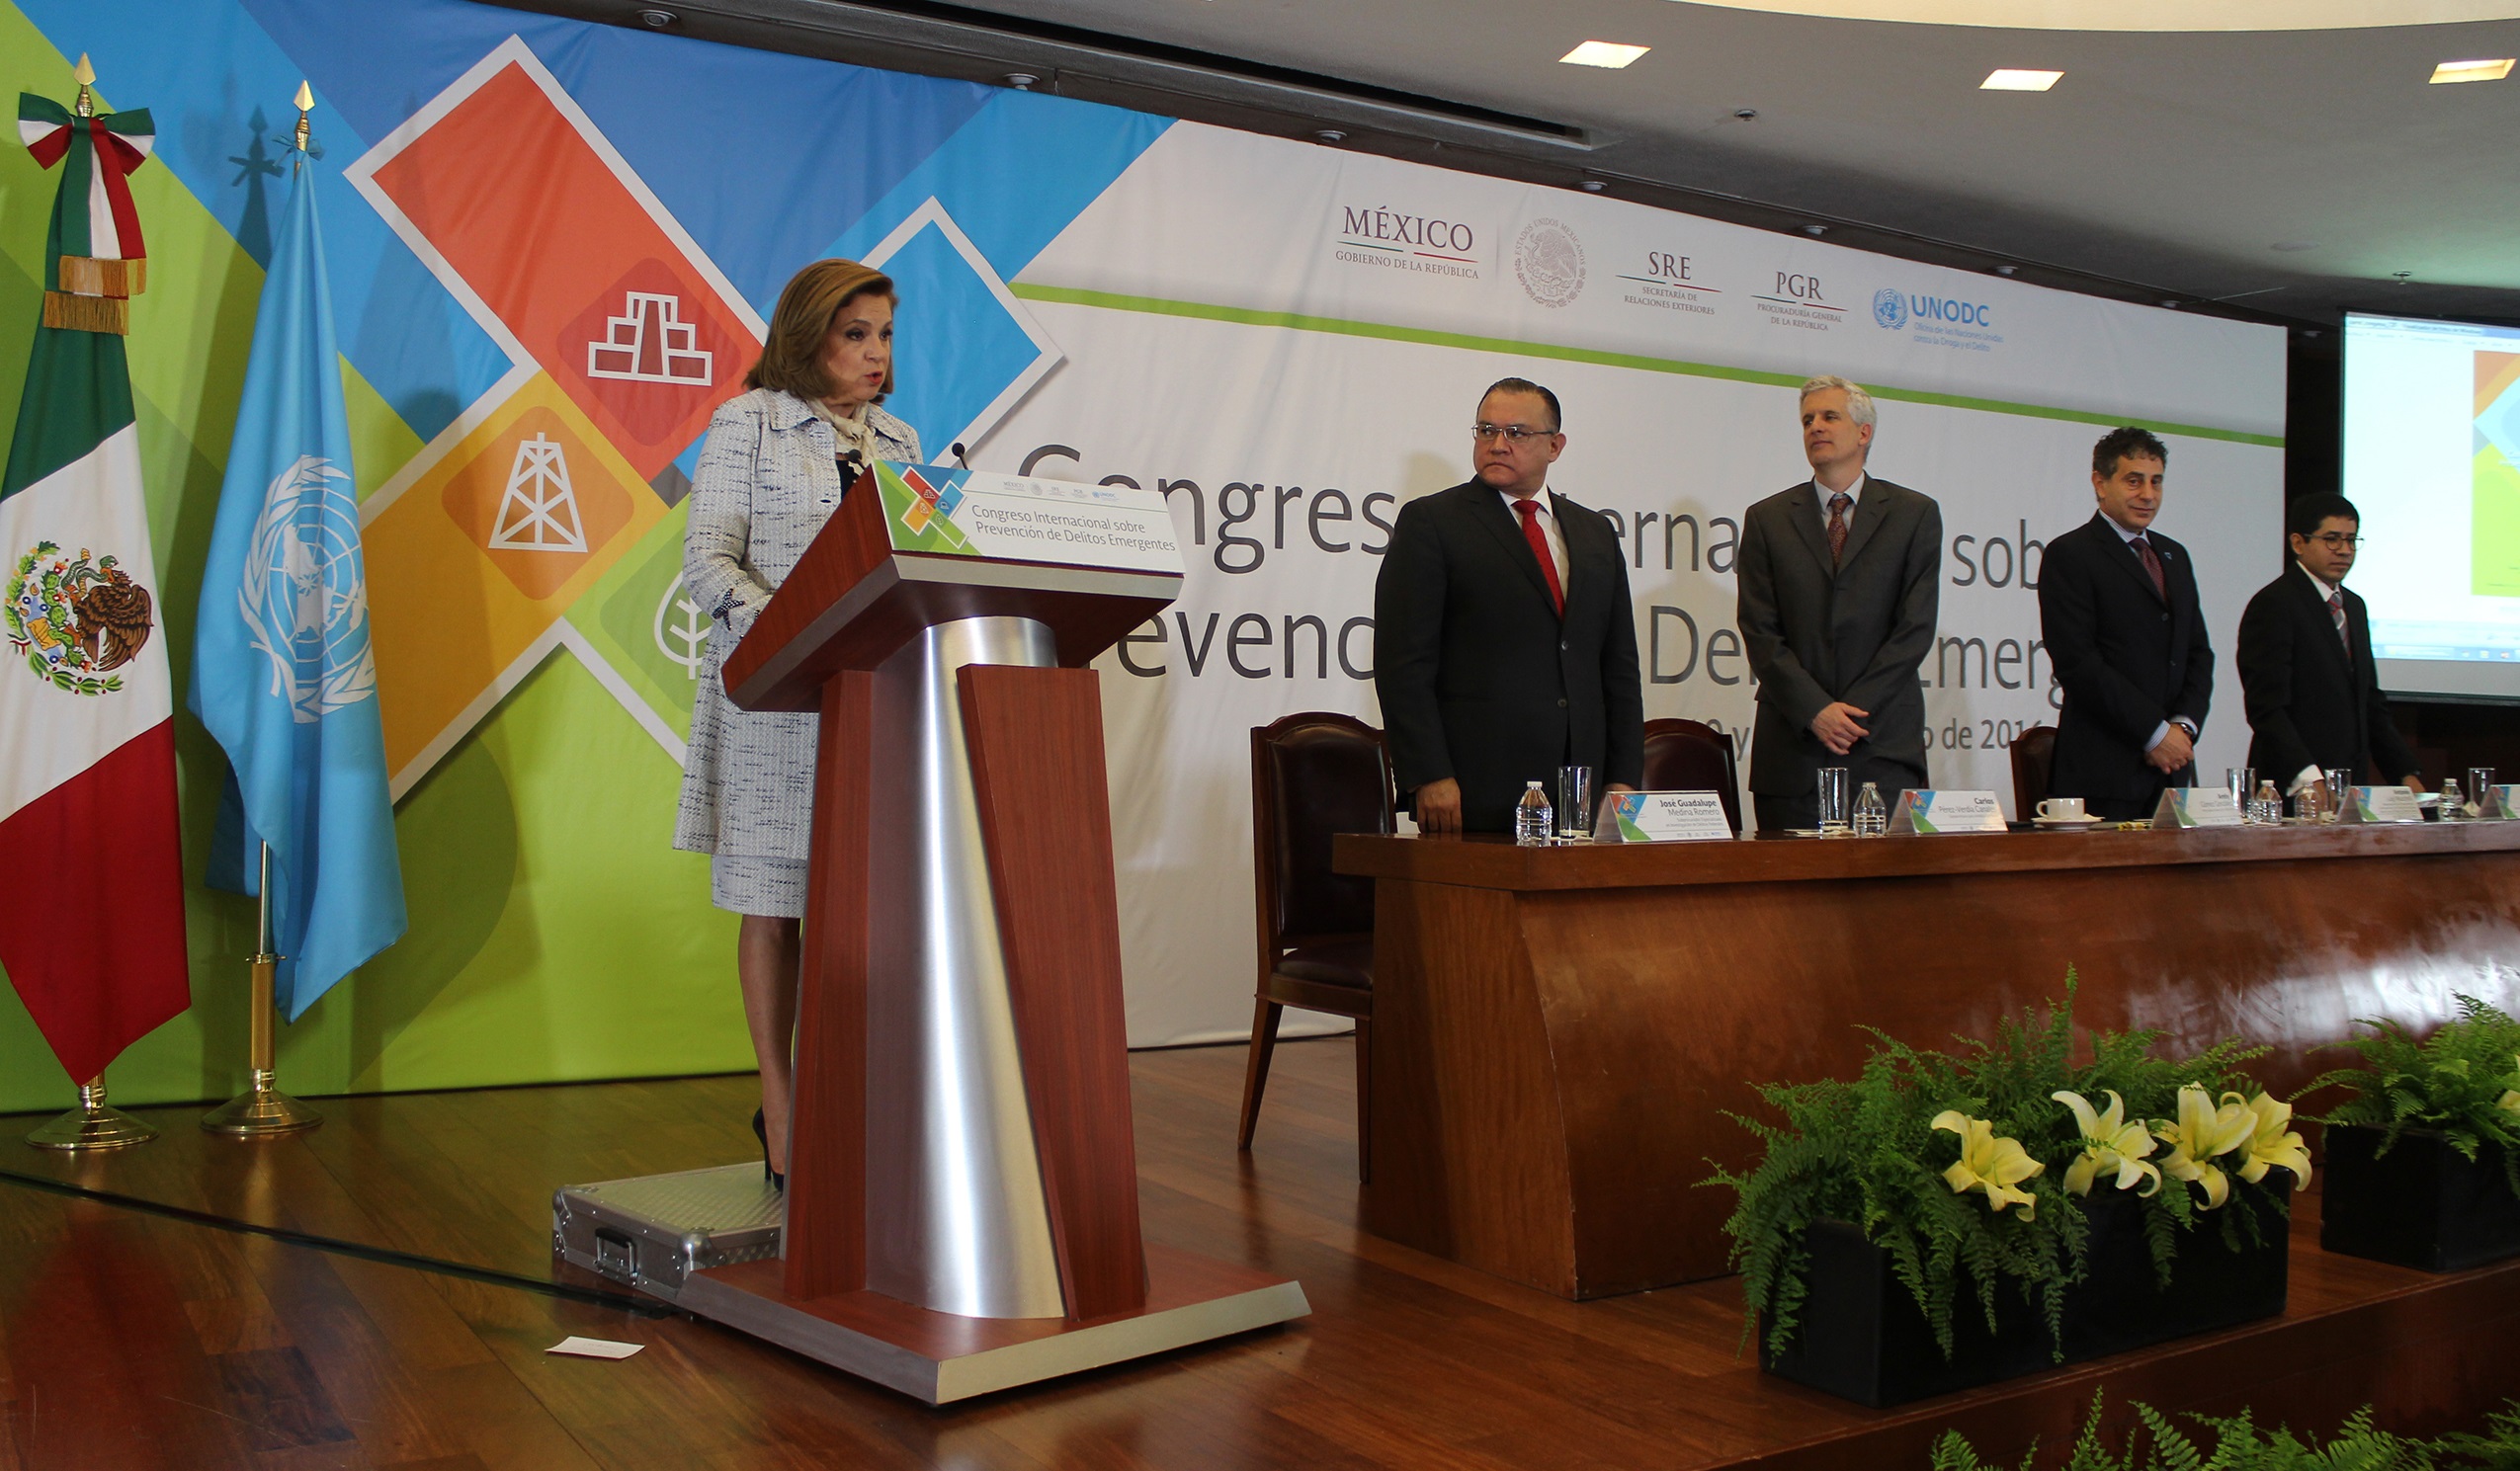 Foto 3 Congreso Internacional sobre Prevenci n de Delitos Emergentes3jpg